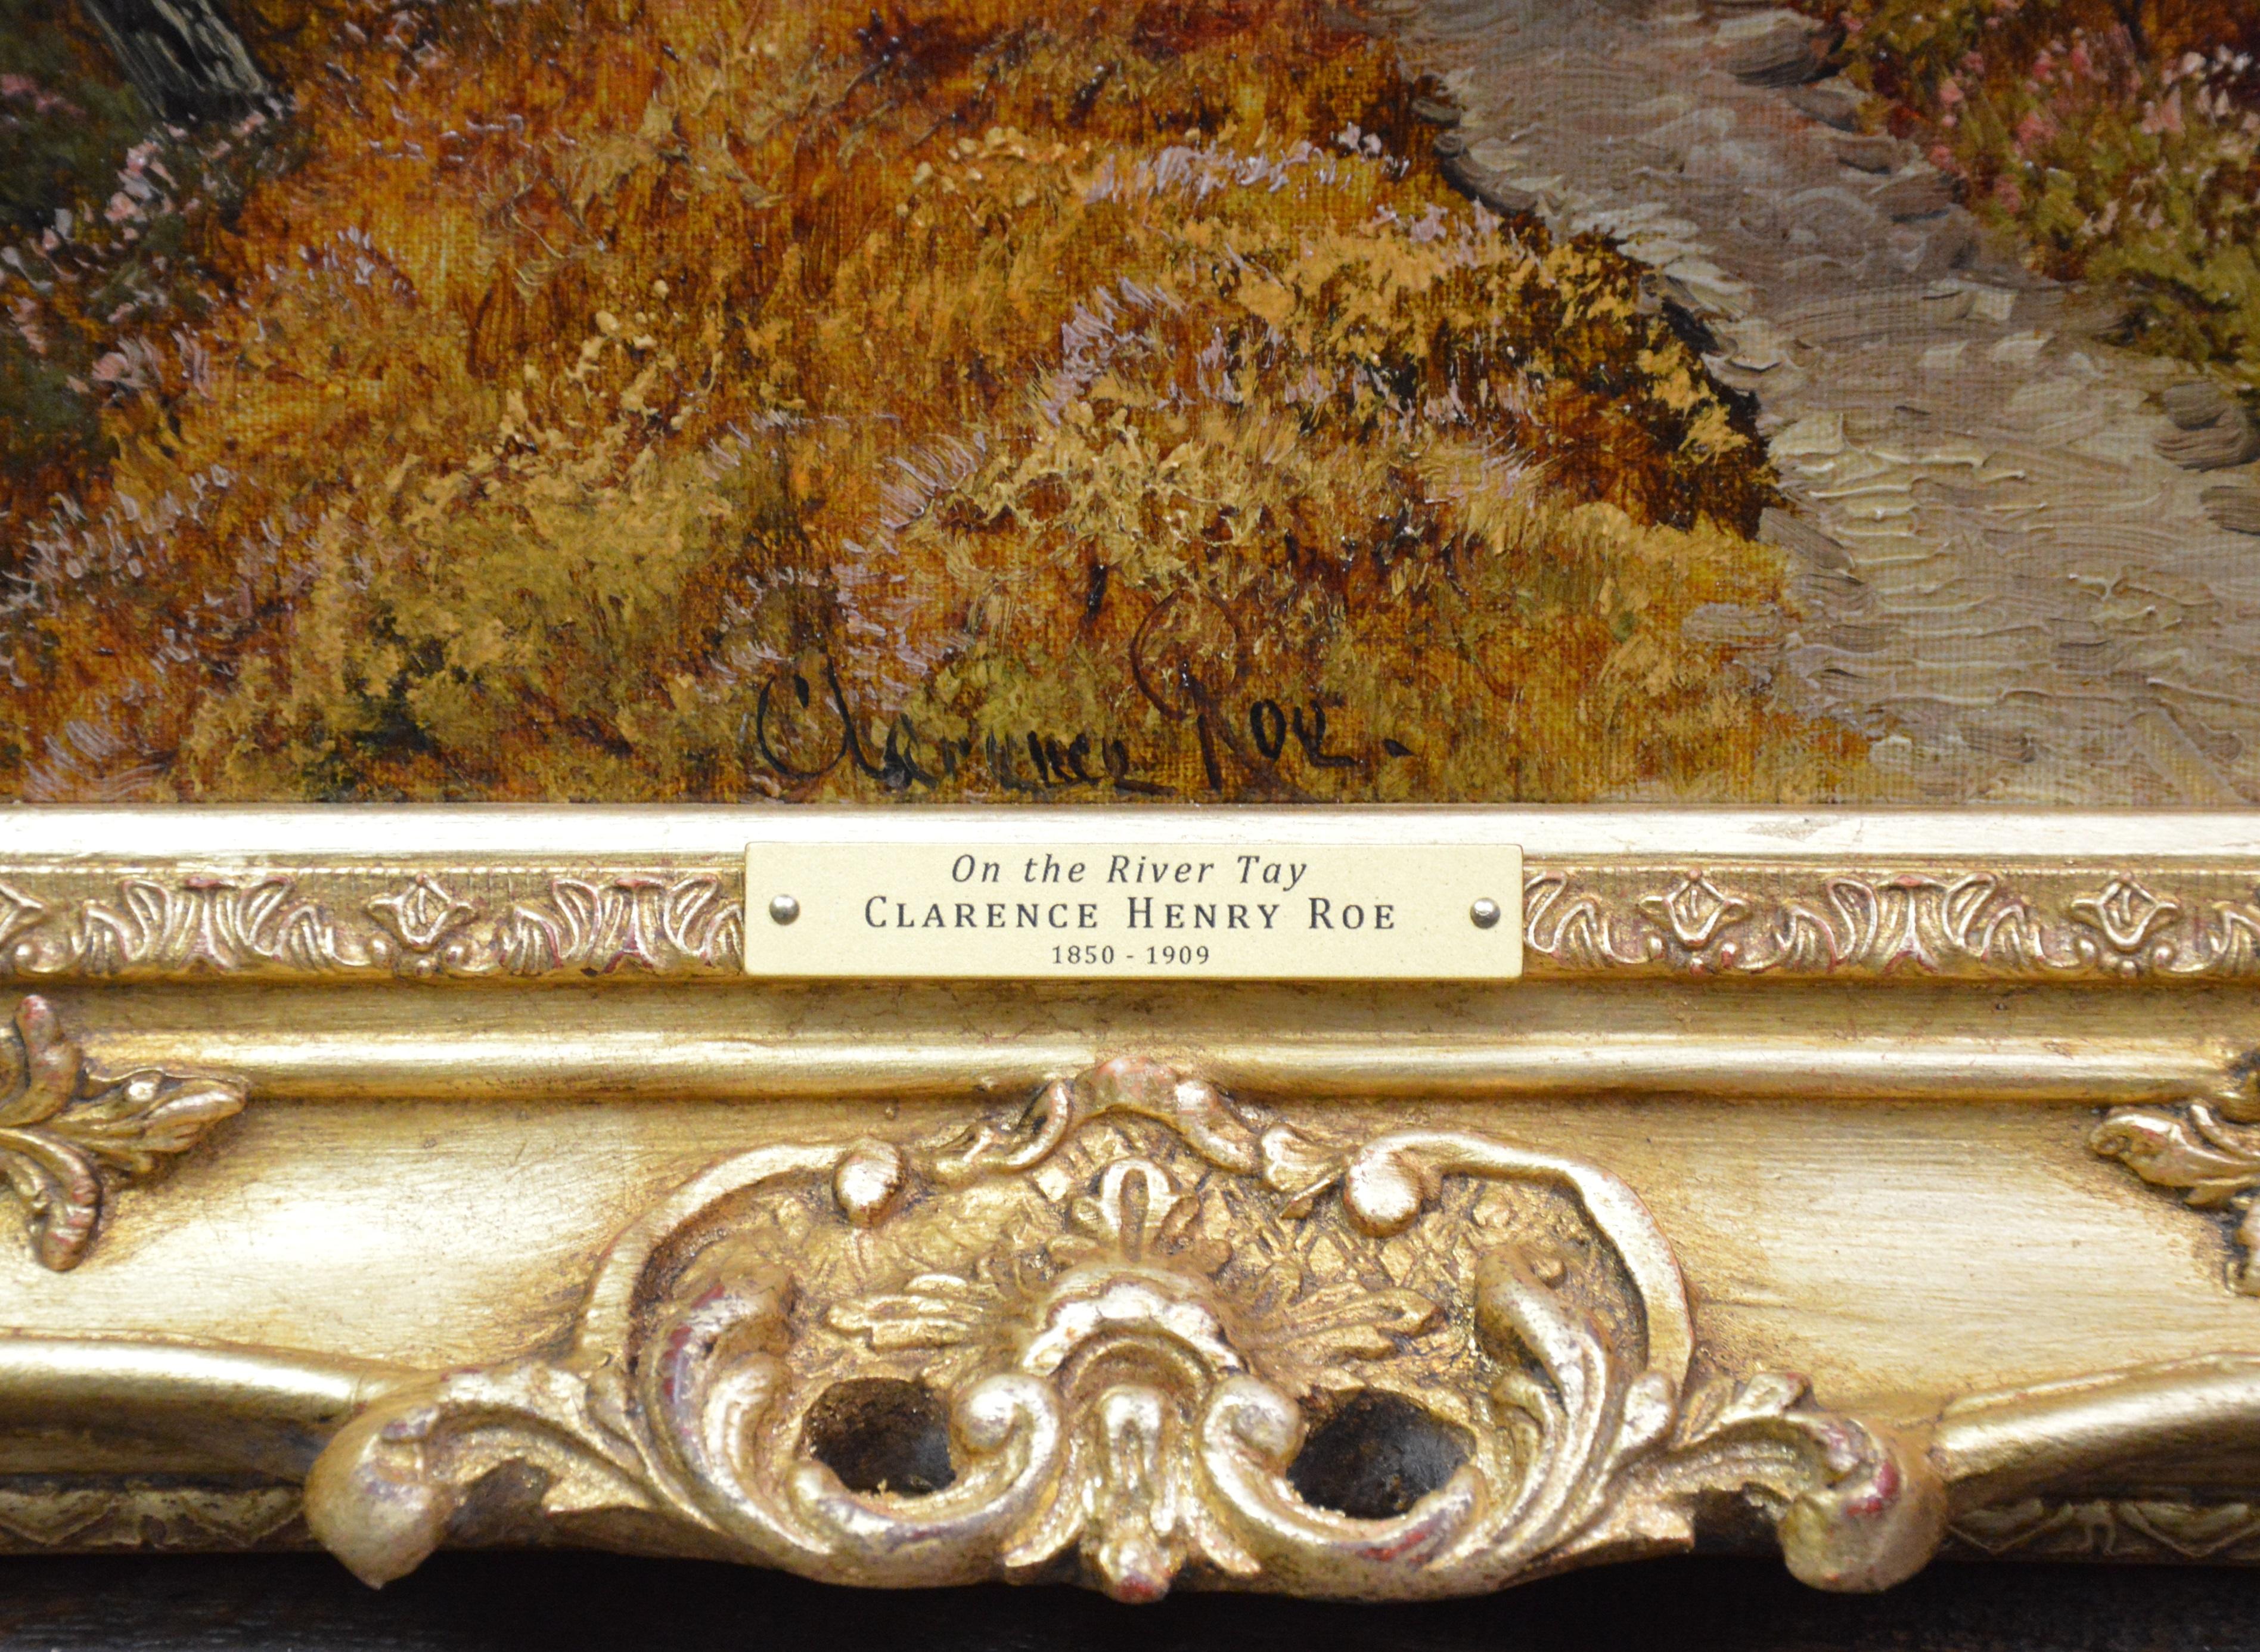 On the River Tay - Peinture à l'huile du 19ème siècle - Paysage des Highlands écossais 2